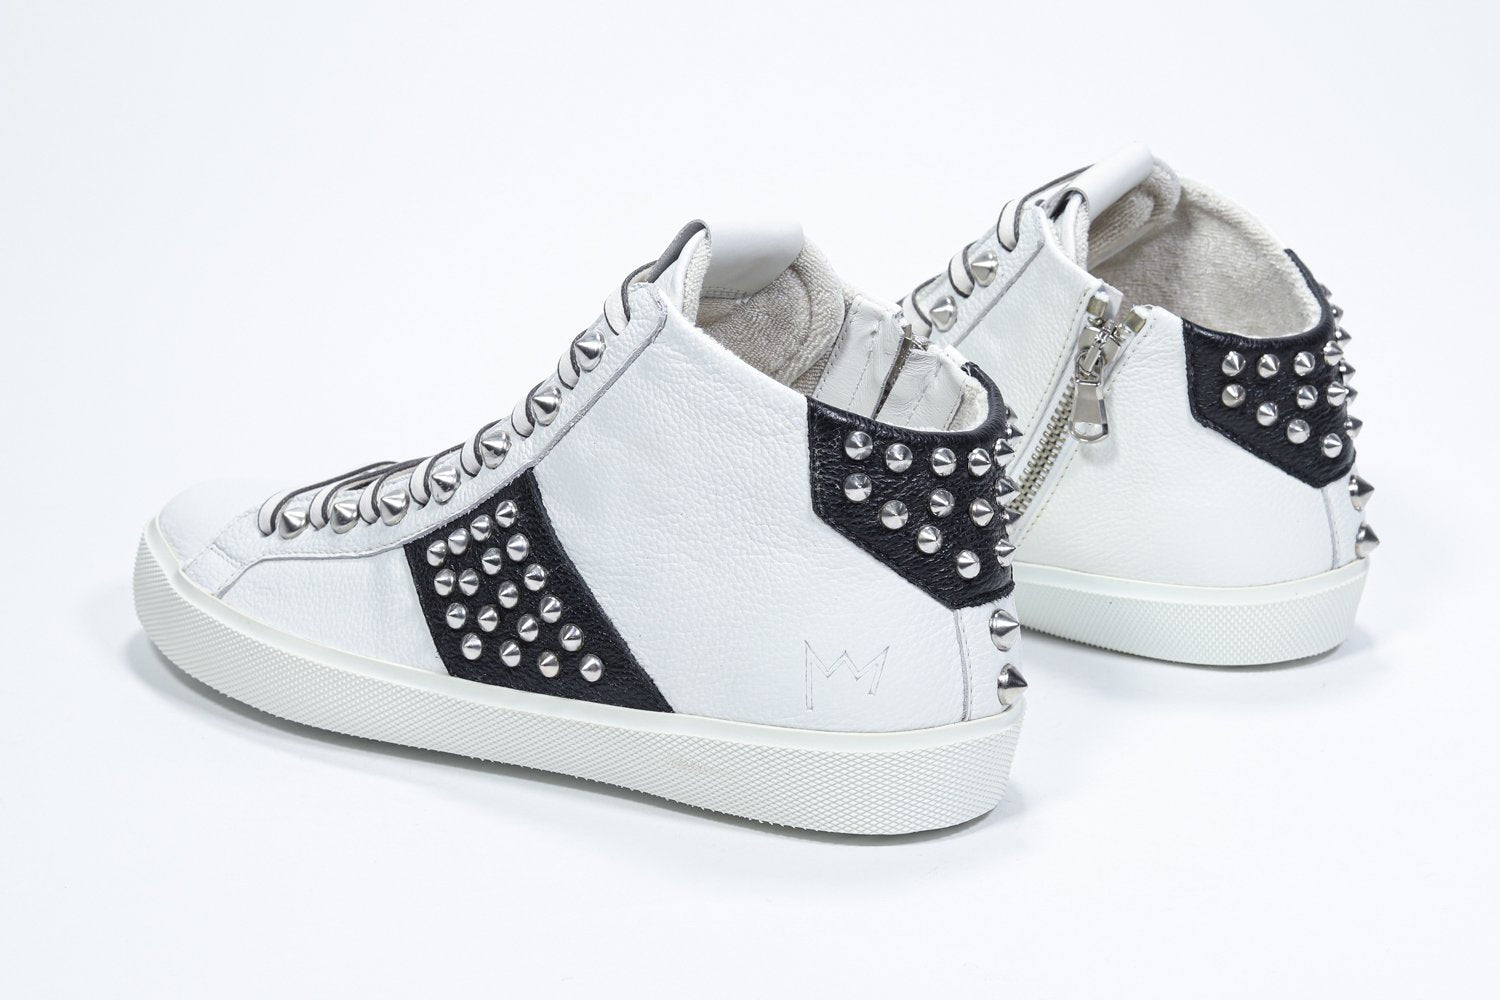 Vue de trois quarts arrière d'un modèle intermédiaire blanc et noir sneaker. Tige en cuir avec clous, fermeture à glissière interne et semelle en caoutchouc blanc.